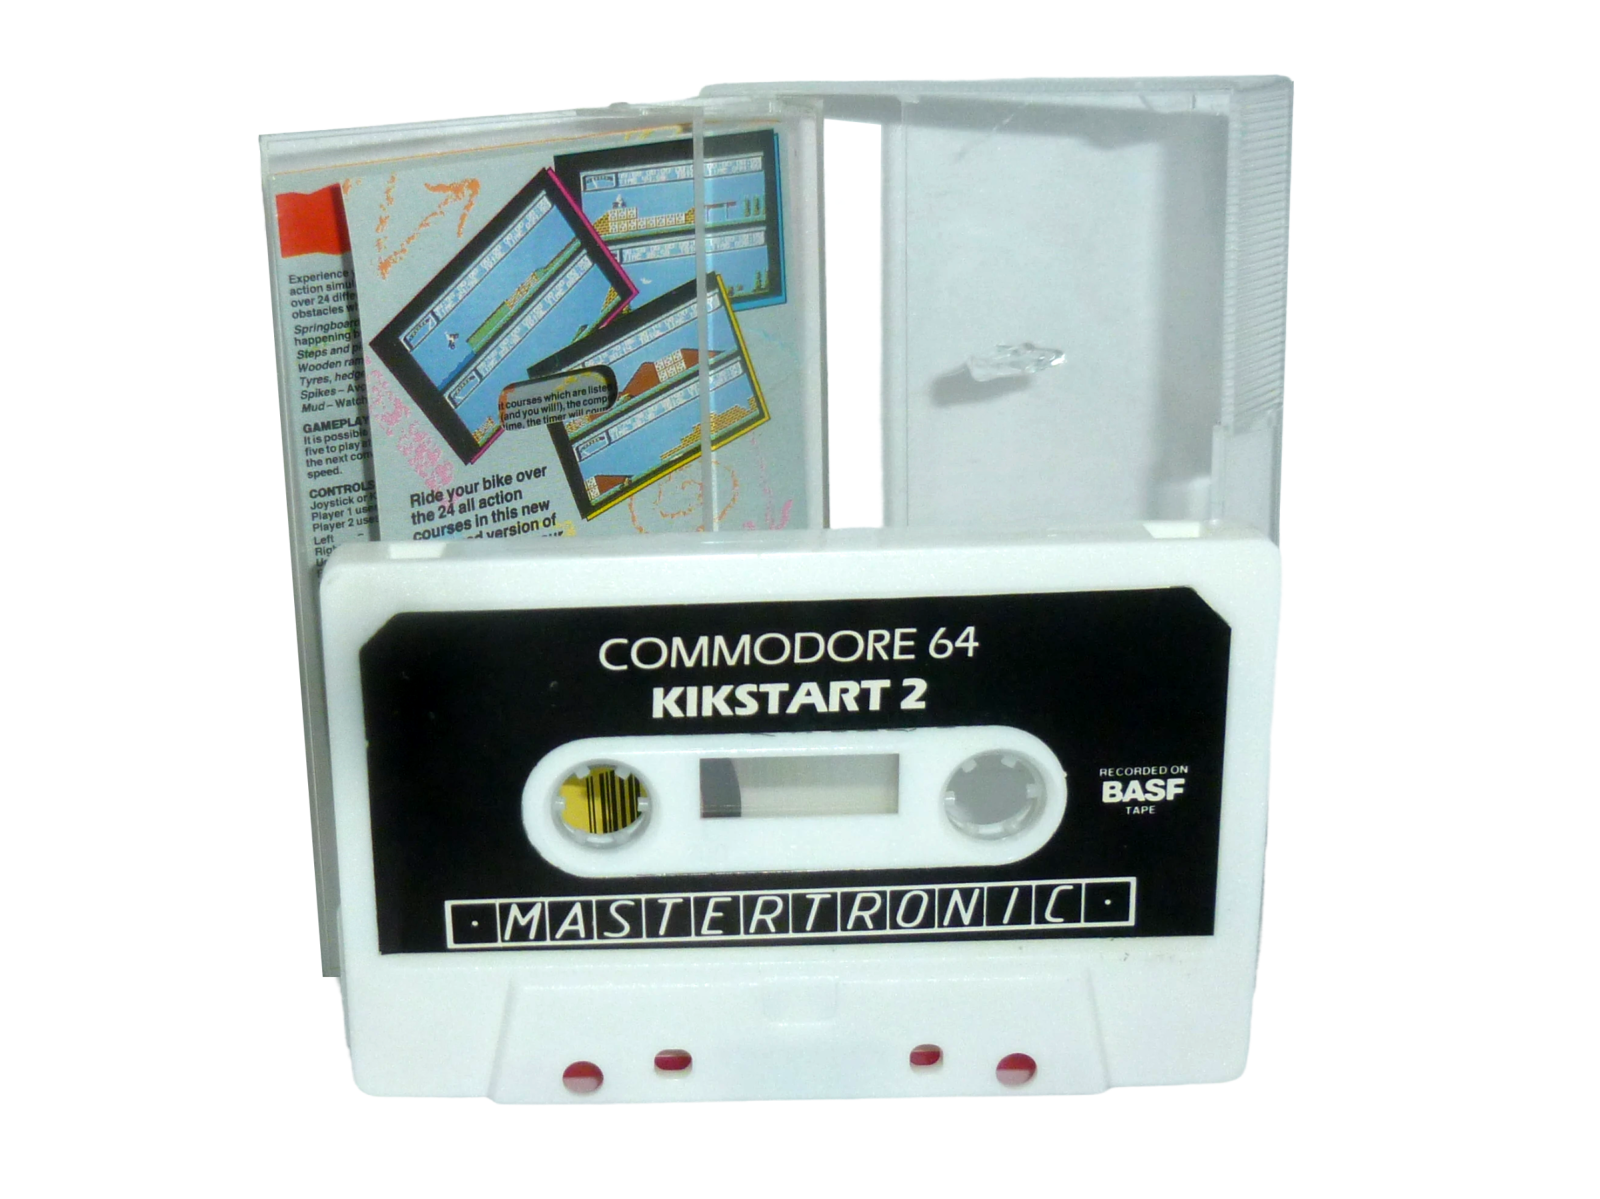 Kikstart 2 - Kassette / Datasette Mastertronic 1987 2